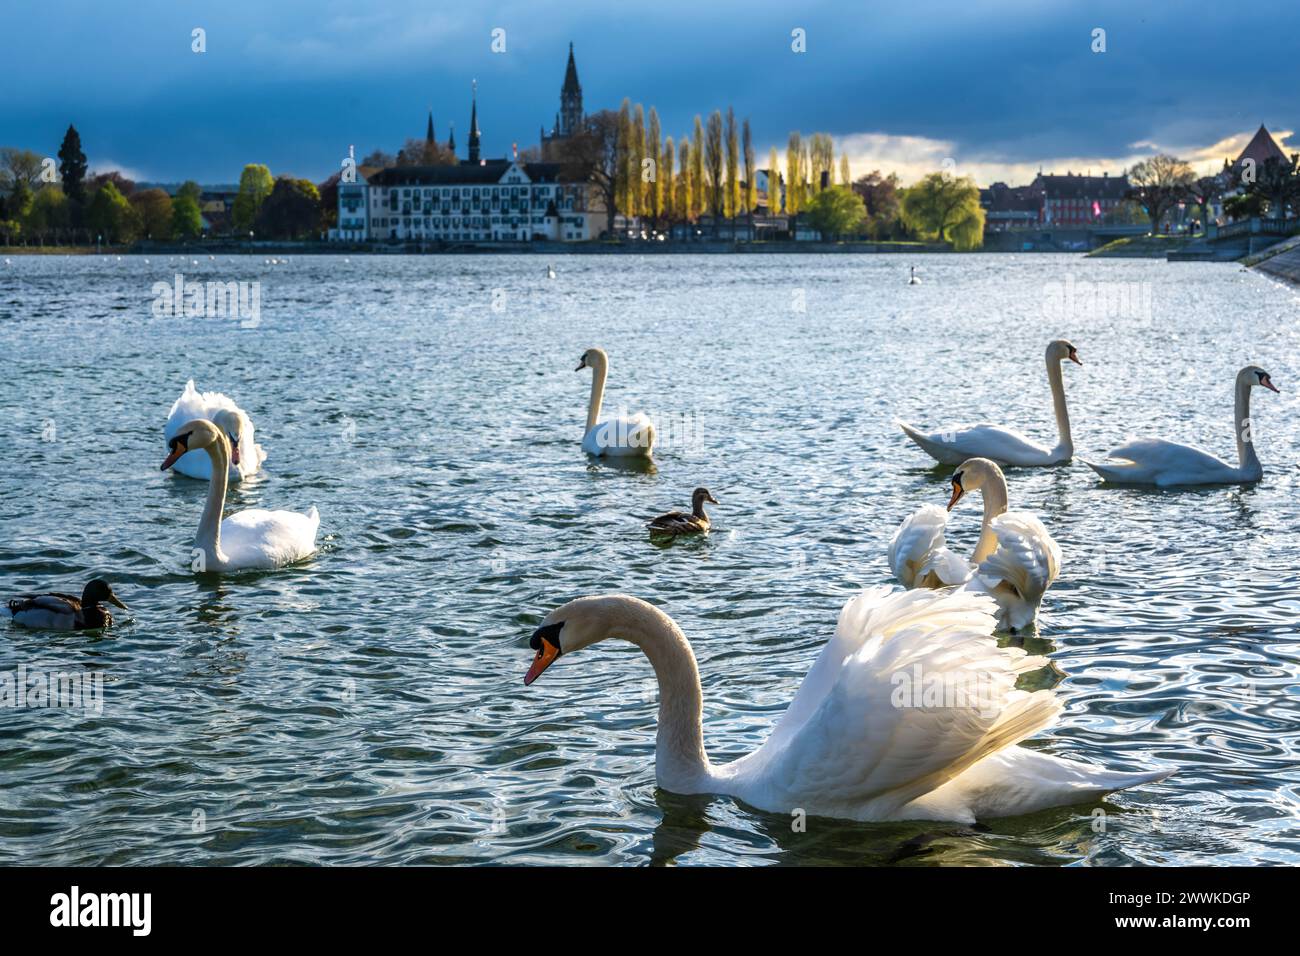 Beschreibung : Schwäne schwimmen an einem sonnigen Frühlingstag entlang der Uferpromenade mit dem Steigenberger Inselhotel, dem Münster und der Rheinbr Banque D'Images